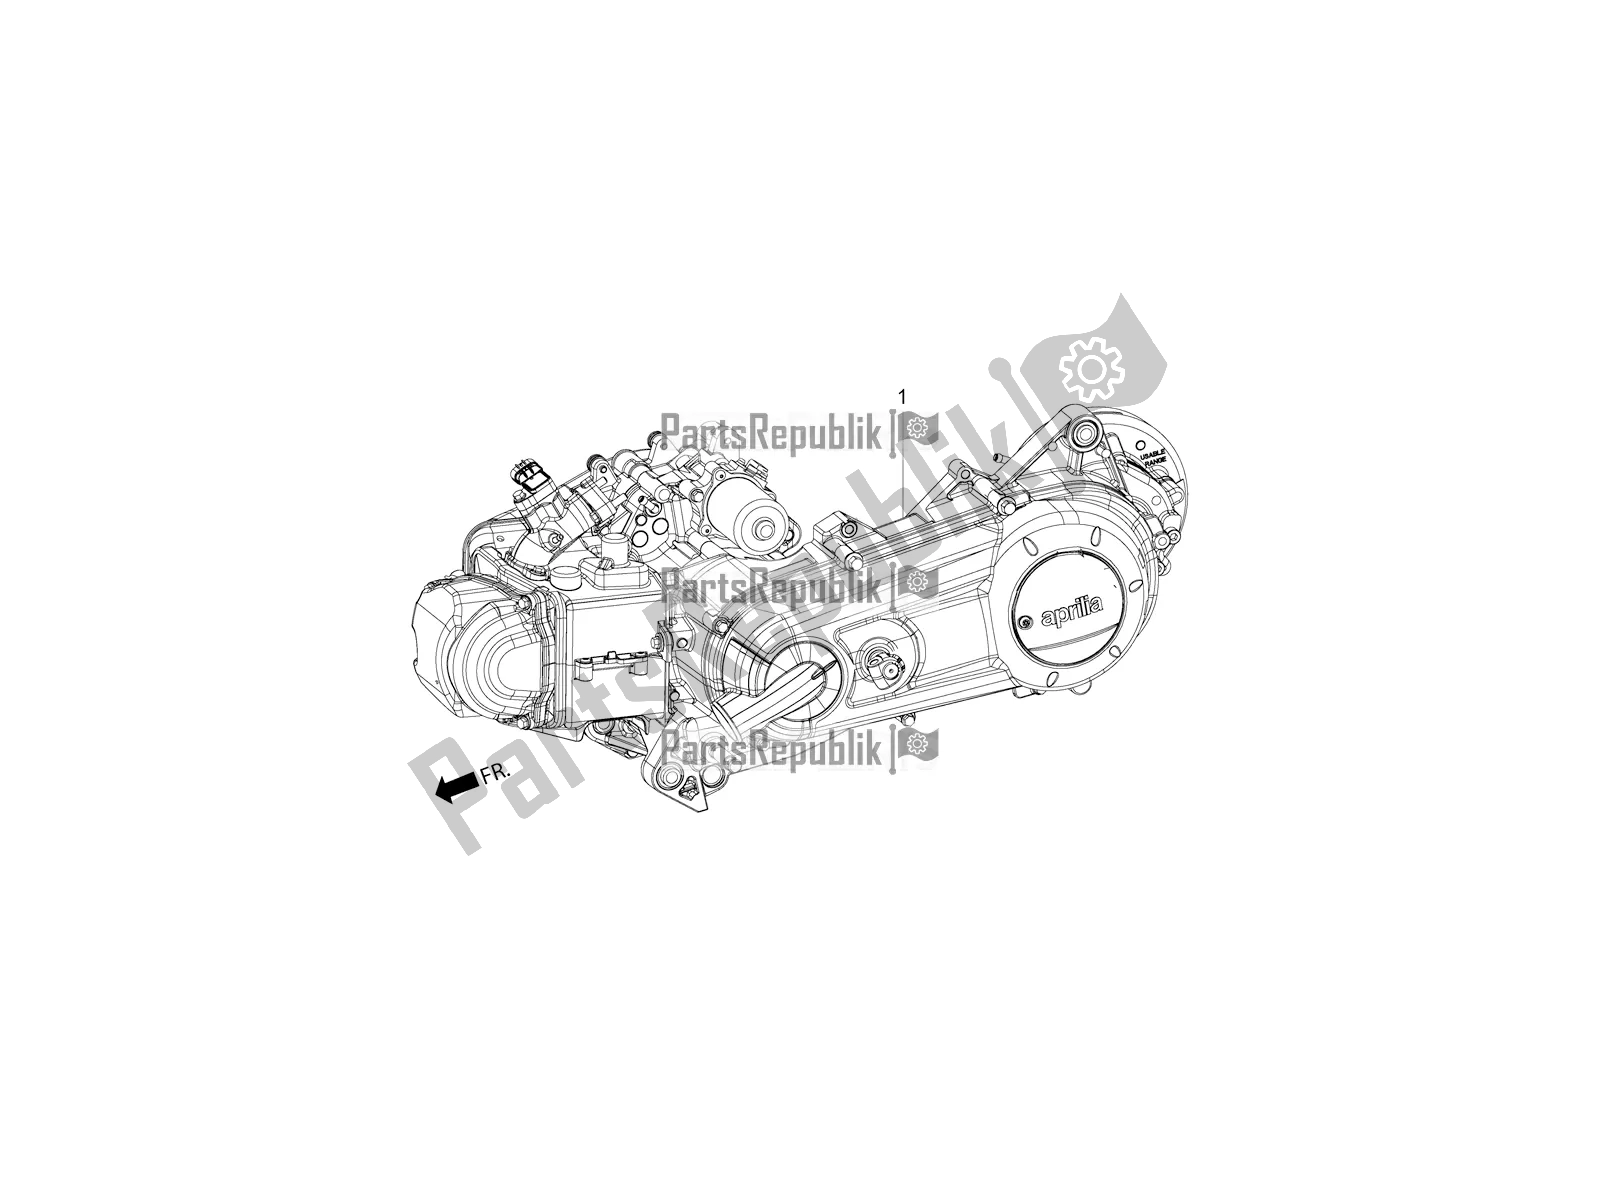 Alle onderdelen voor de Complete Engine van de Aprilia SR 125 Storm TT Bsiv Latam 2021